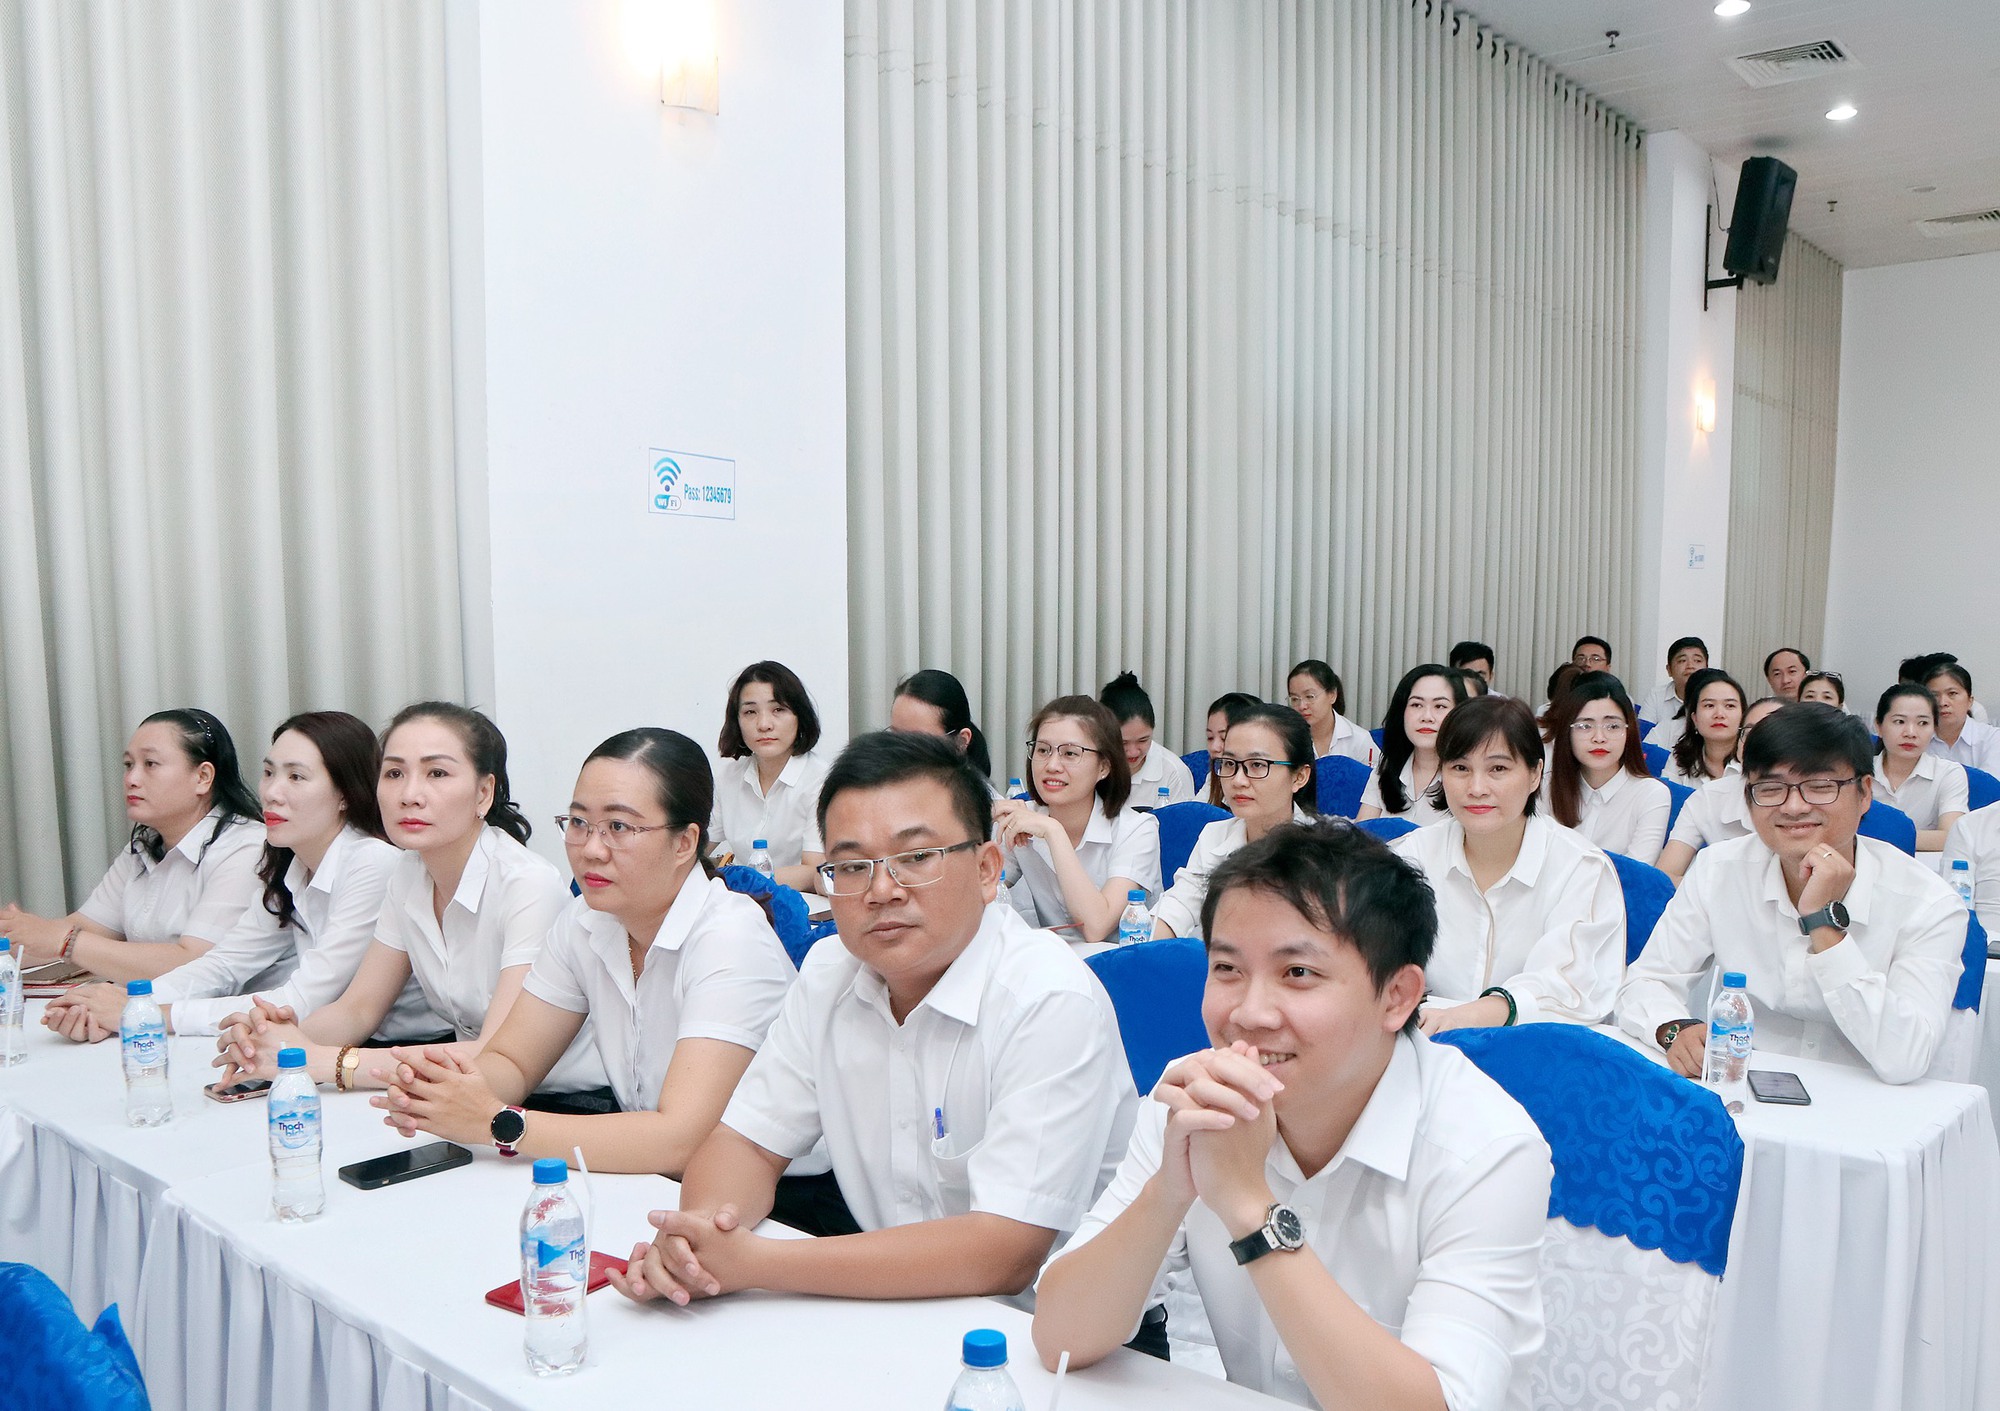 Bảo hiểm Agribank Đà Nẵng tổ chức hội nghị nâng cao kỹ năng, nghiệp vụ chăm sóc khách hàng - Ảnh 8.